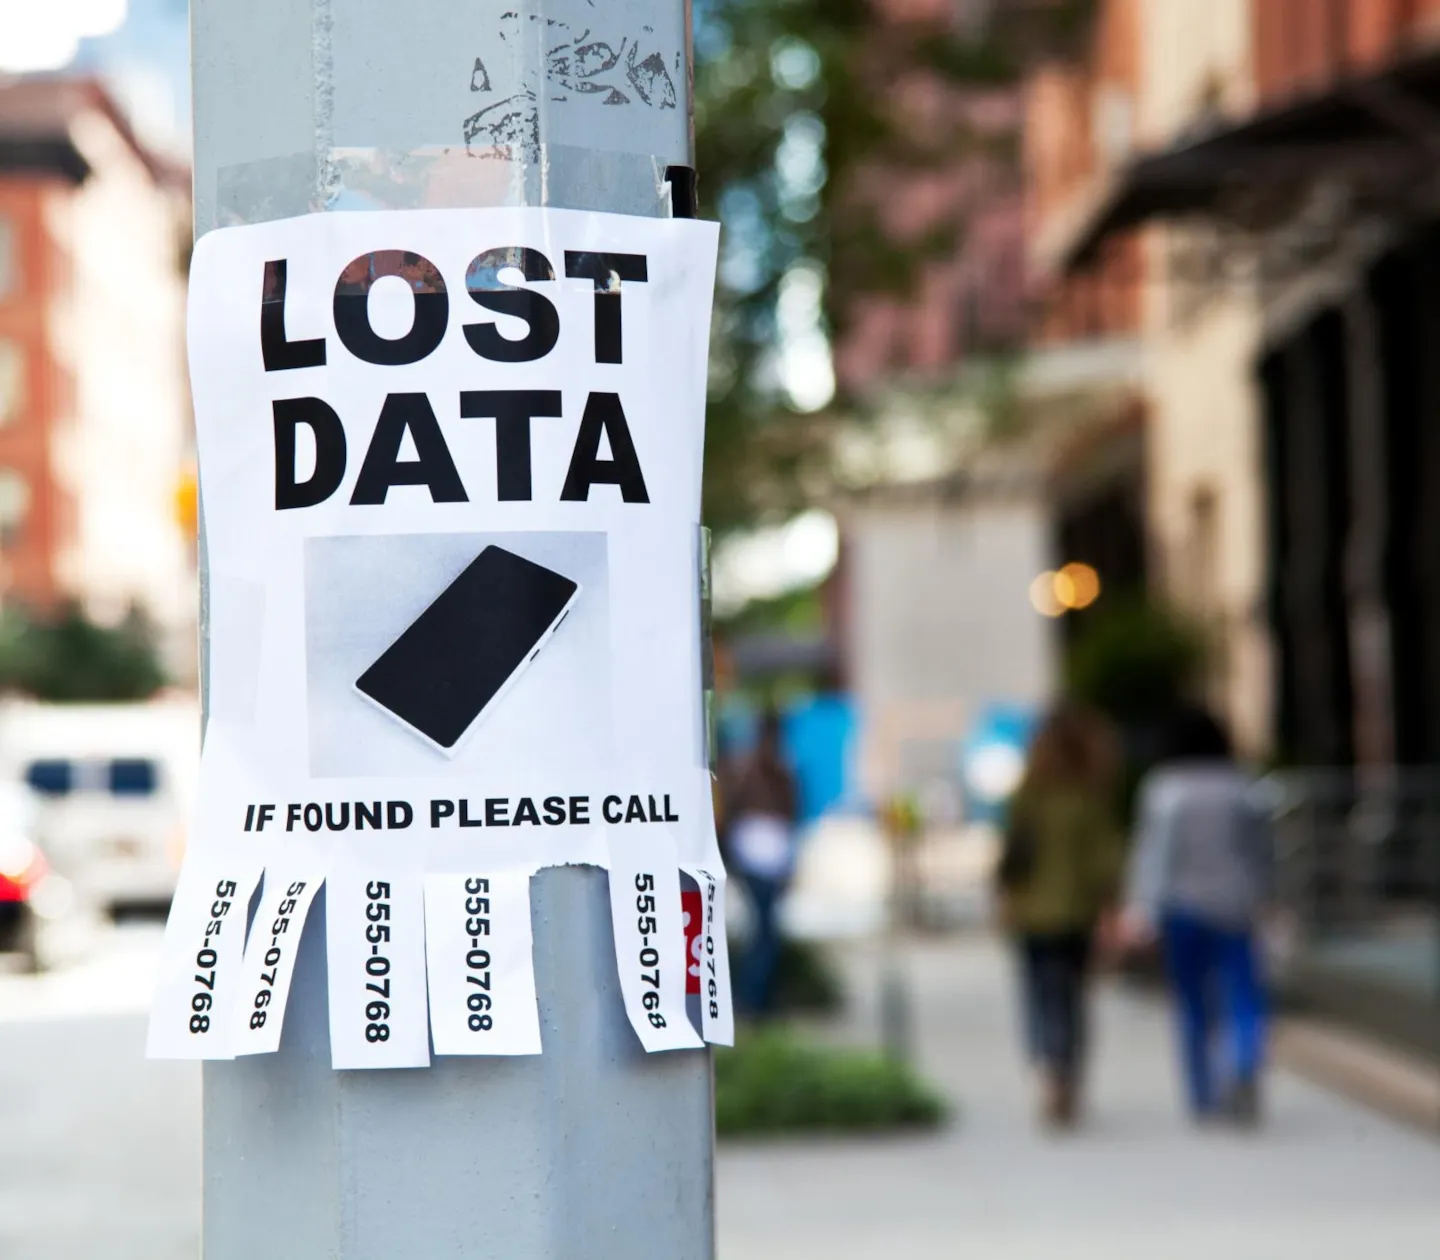 Lost data